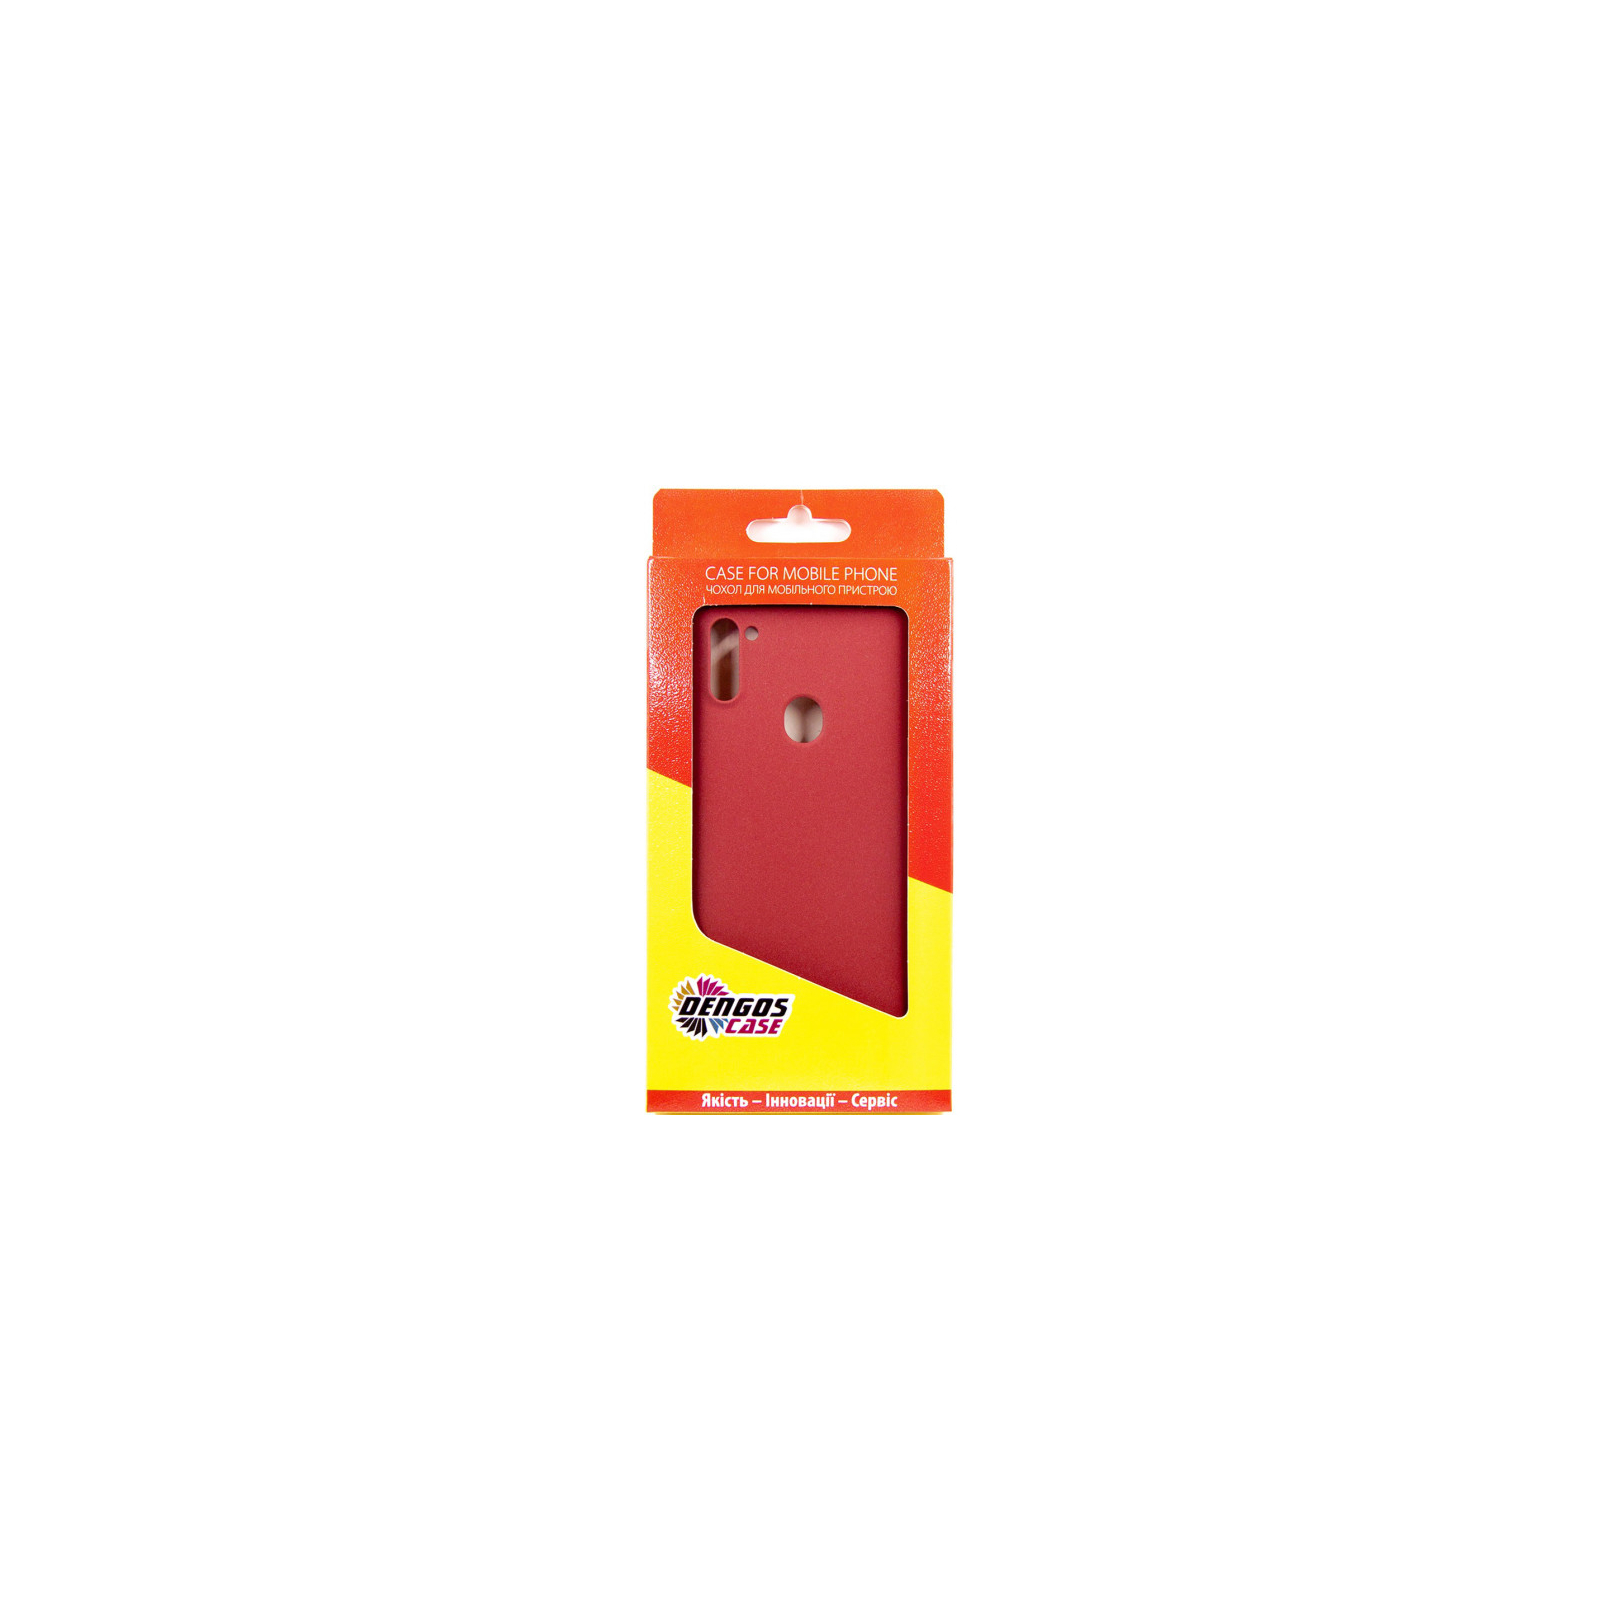 Чехол для мобильного телефона Dengos Carbon Samsung Galaxy A11, red (DG-TPU-CRBN-66) (DG-TPU-CRBN-66) изображение 4